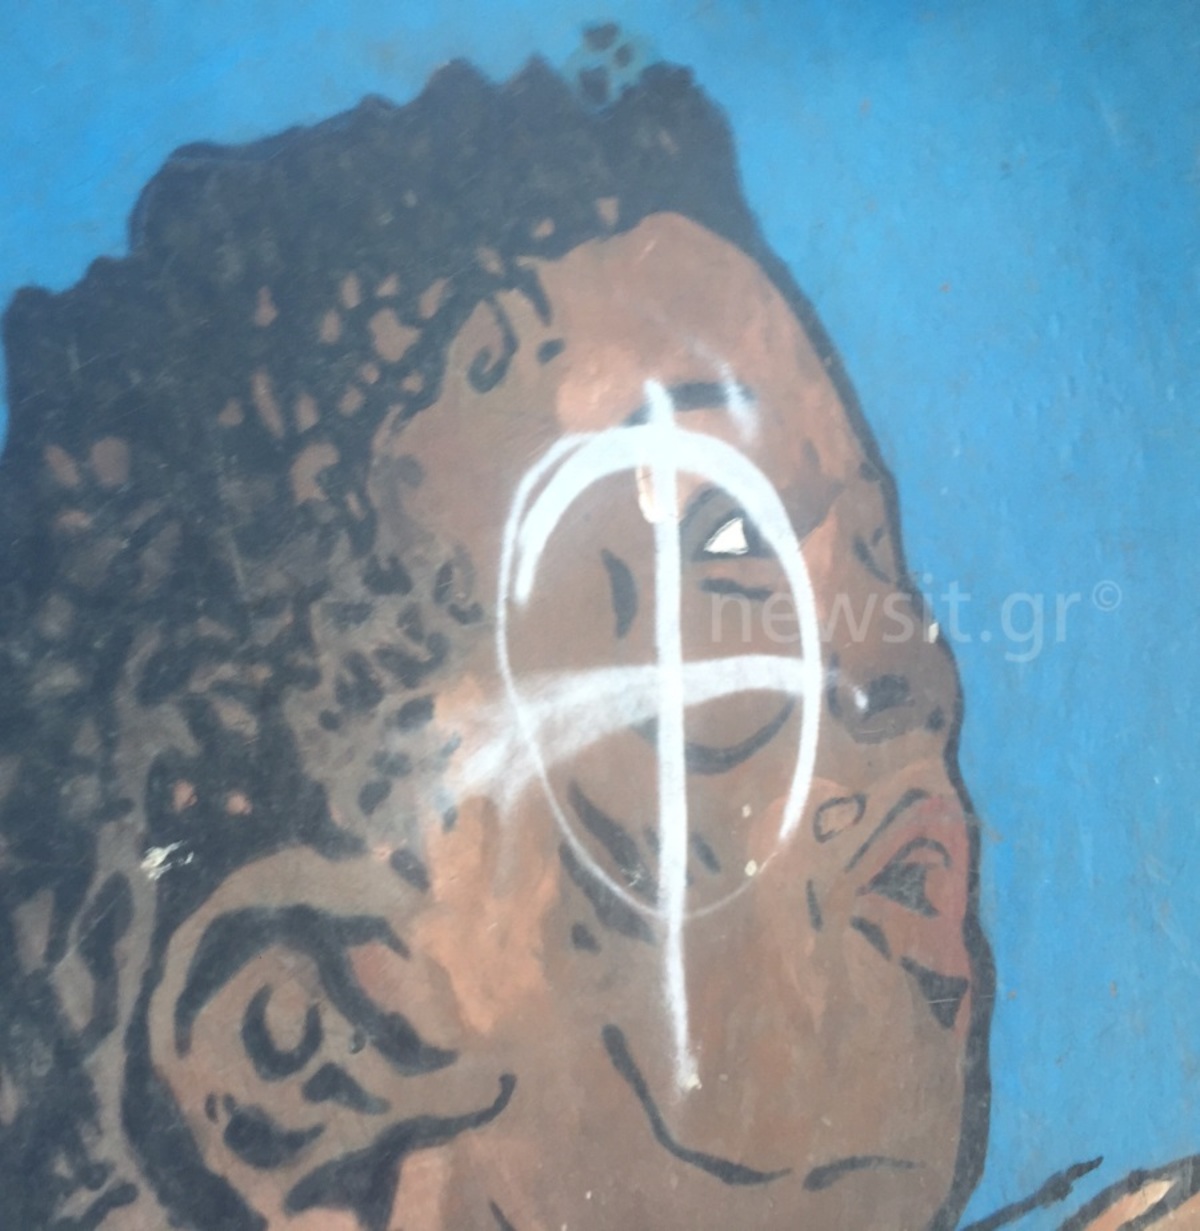 Αίσχος! Χρυσαυγίτες βανδάλισαν το γκράφιτι για τον Αντετοκούνμπο στα Σεπόλια [pics]